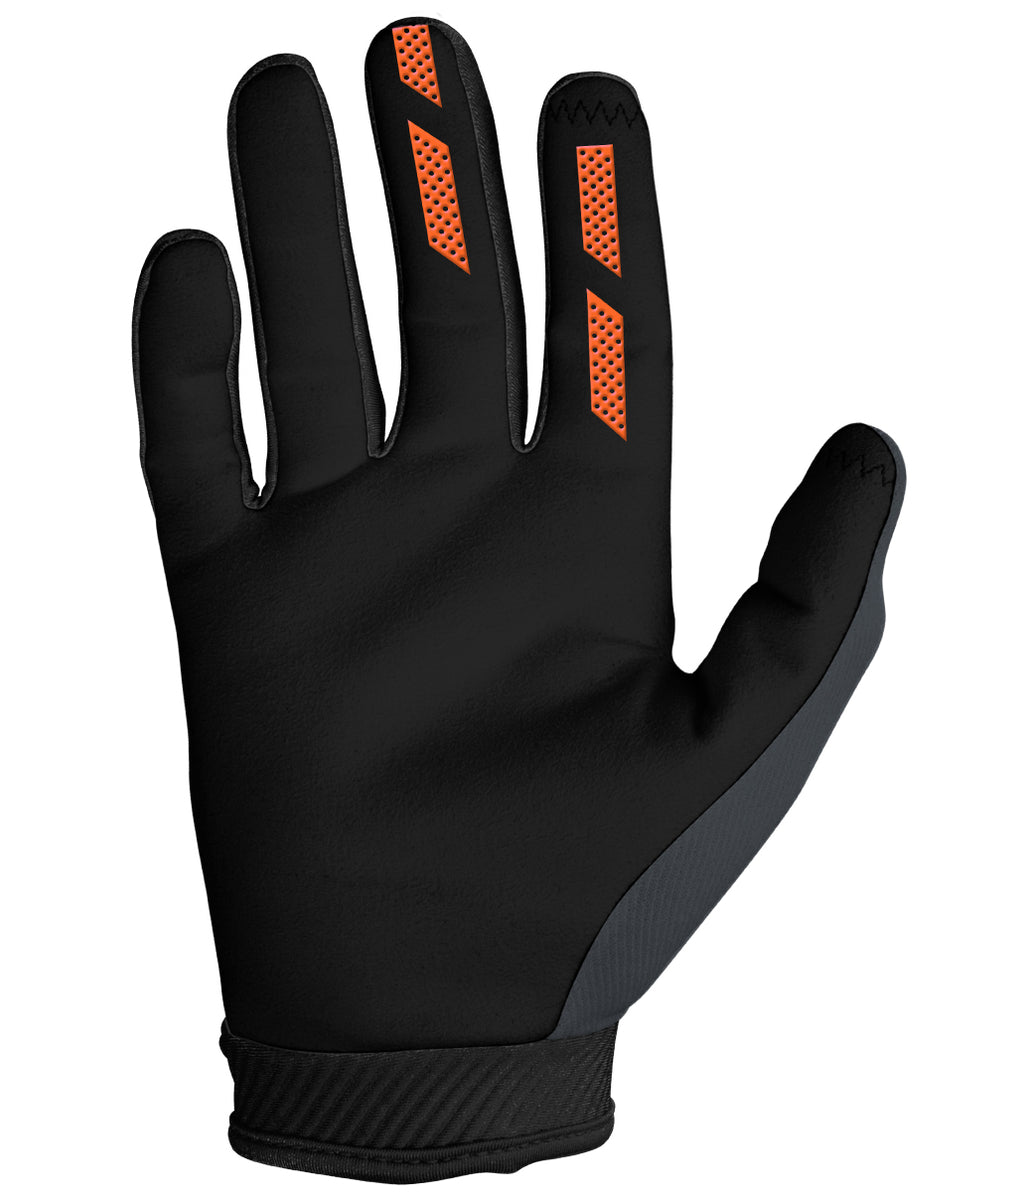 Annex 7 Dot Glove - Charcoal – Seven MX